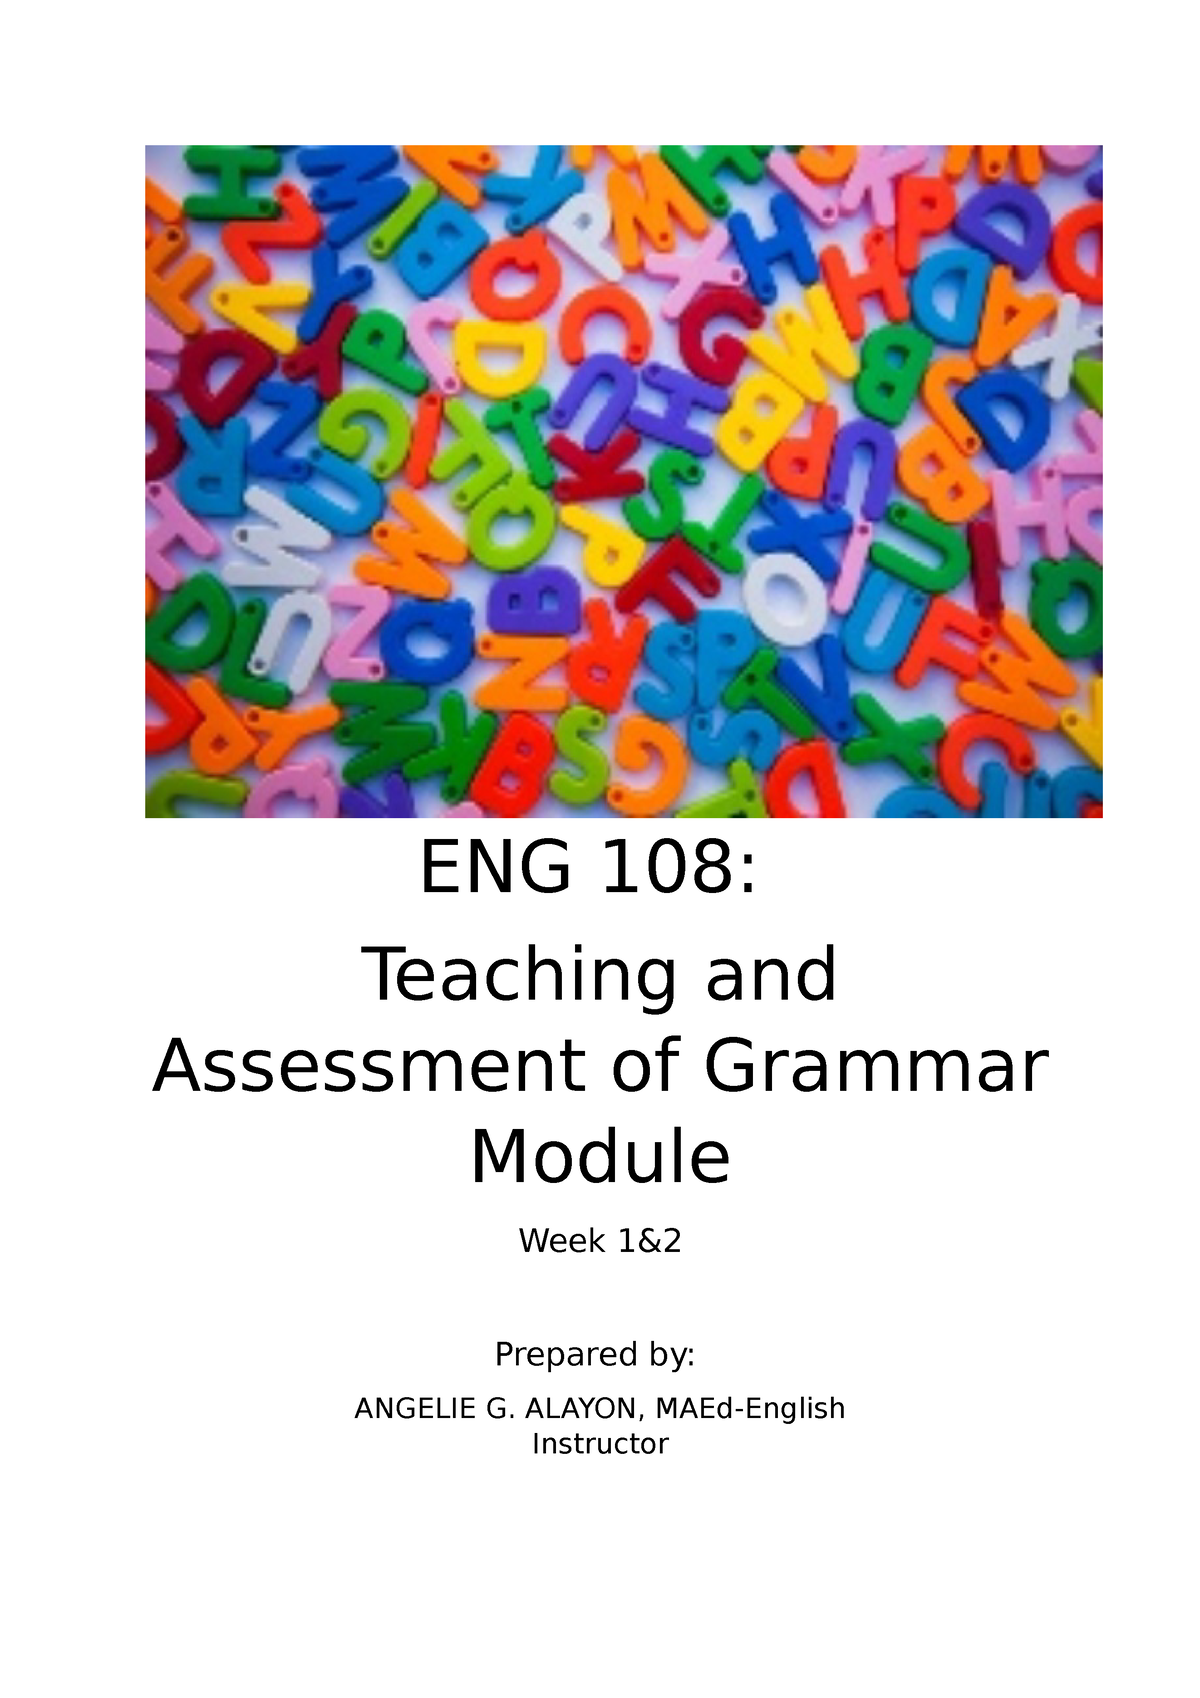 teaching-assessment-of-the-grammar-week-1-2-eng-108-teaching-and